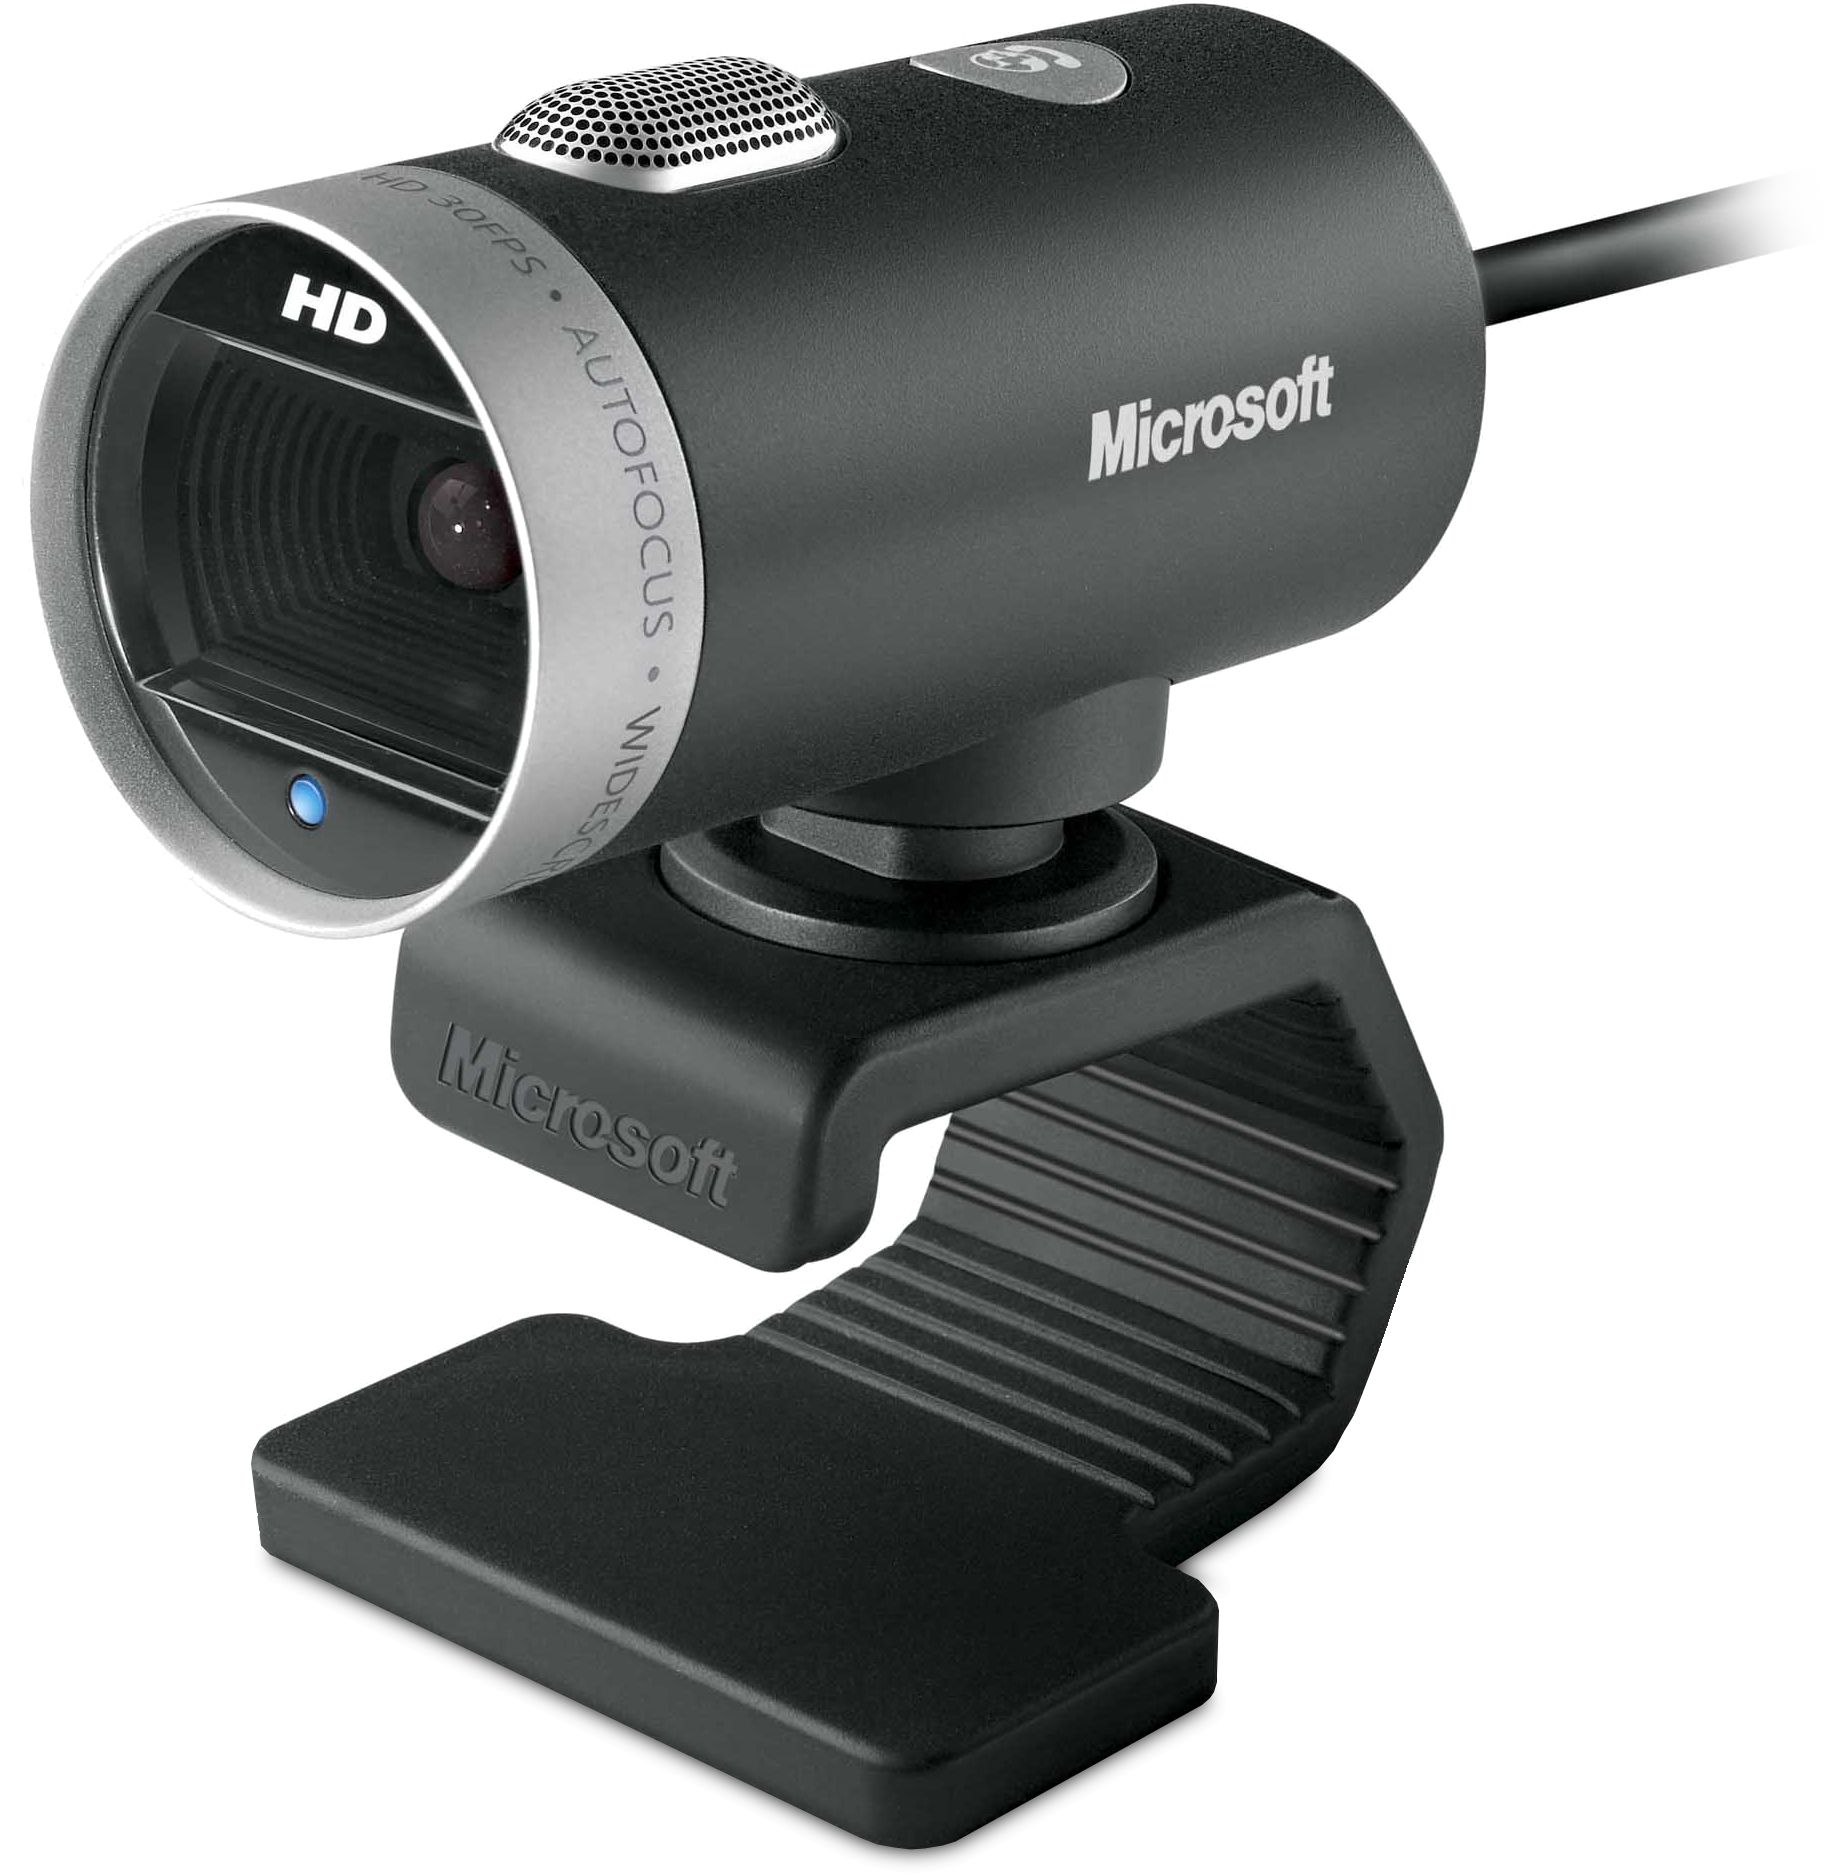 LifeCam Cinema 720p HD video USB Webcam